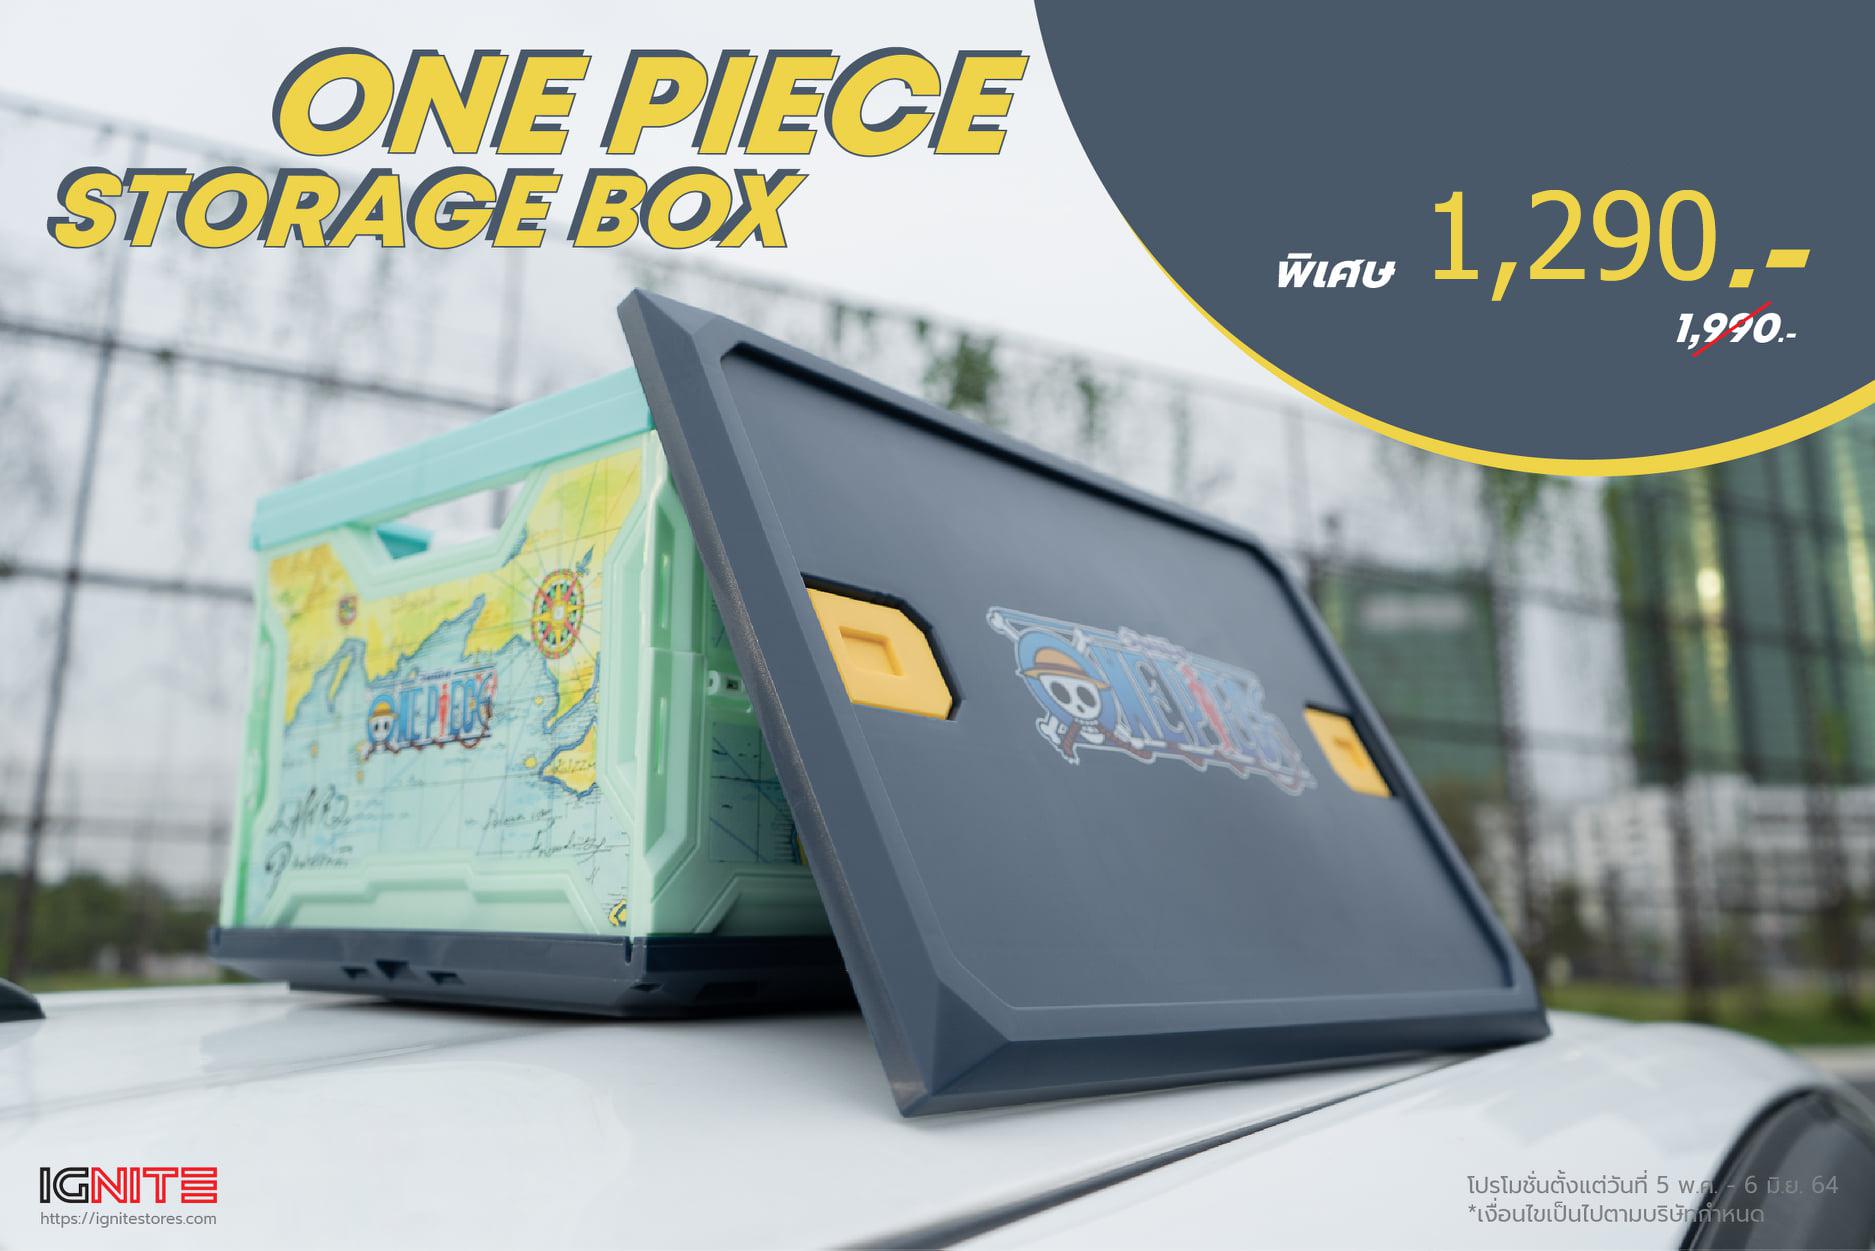 One Piece Storage Box.